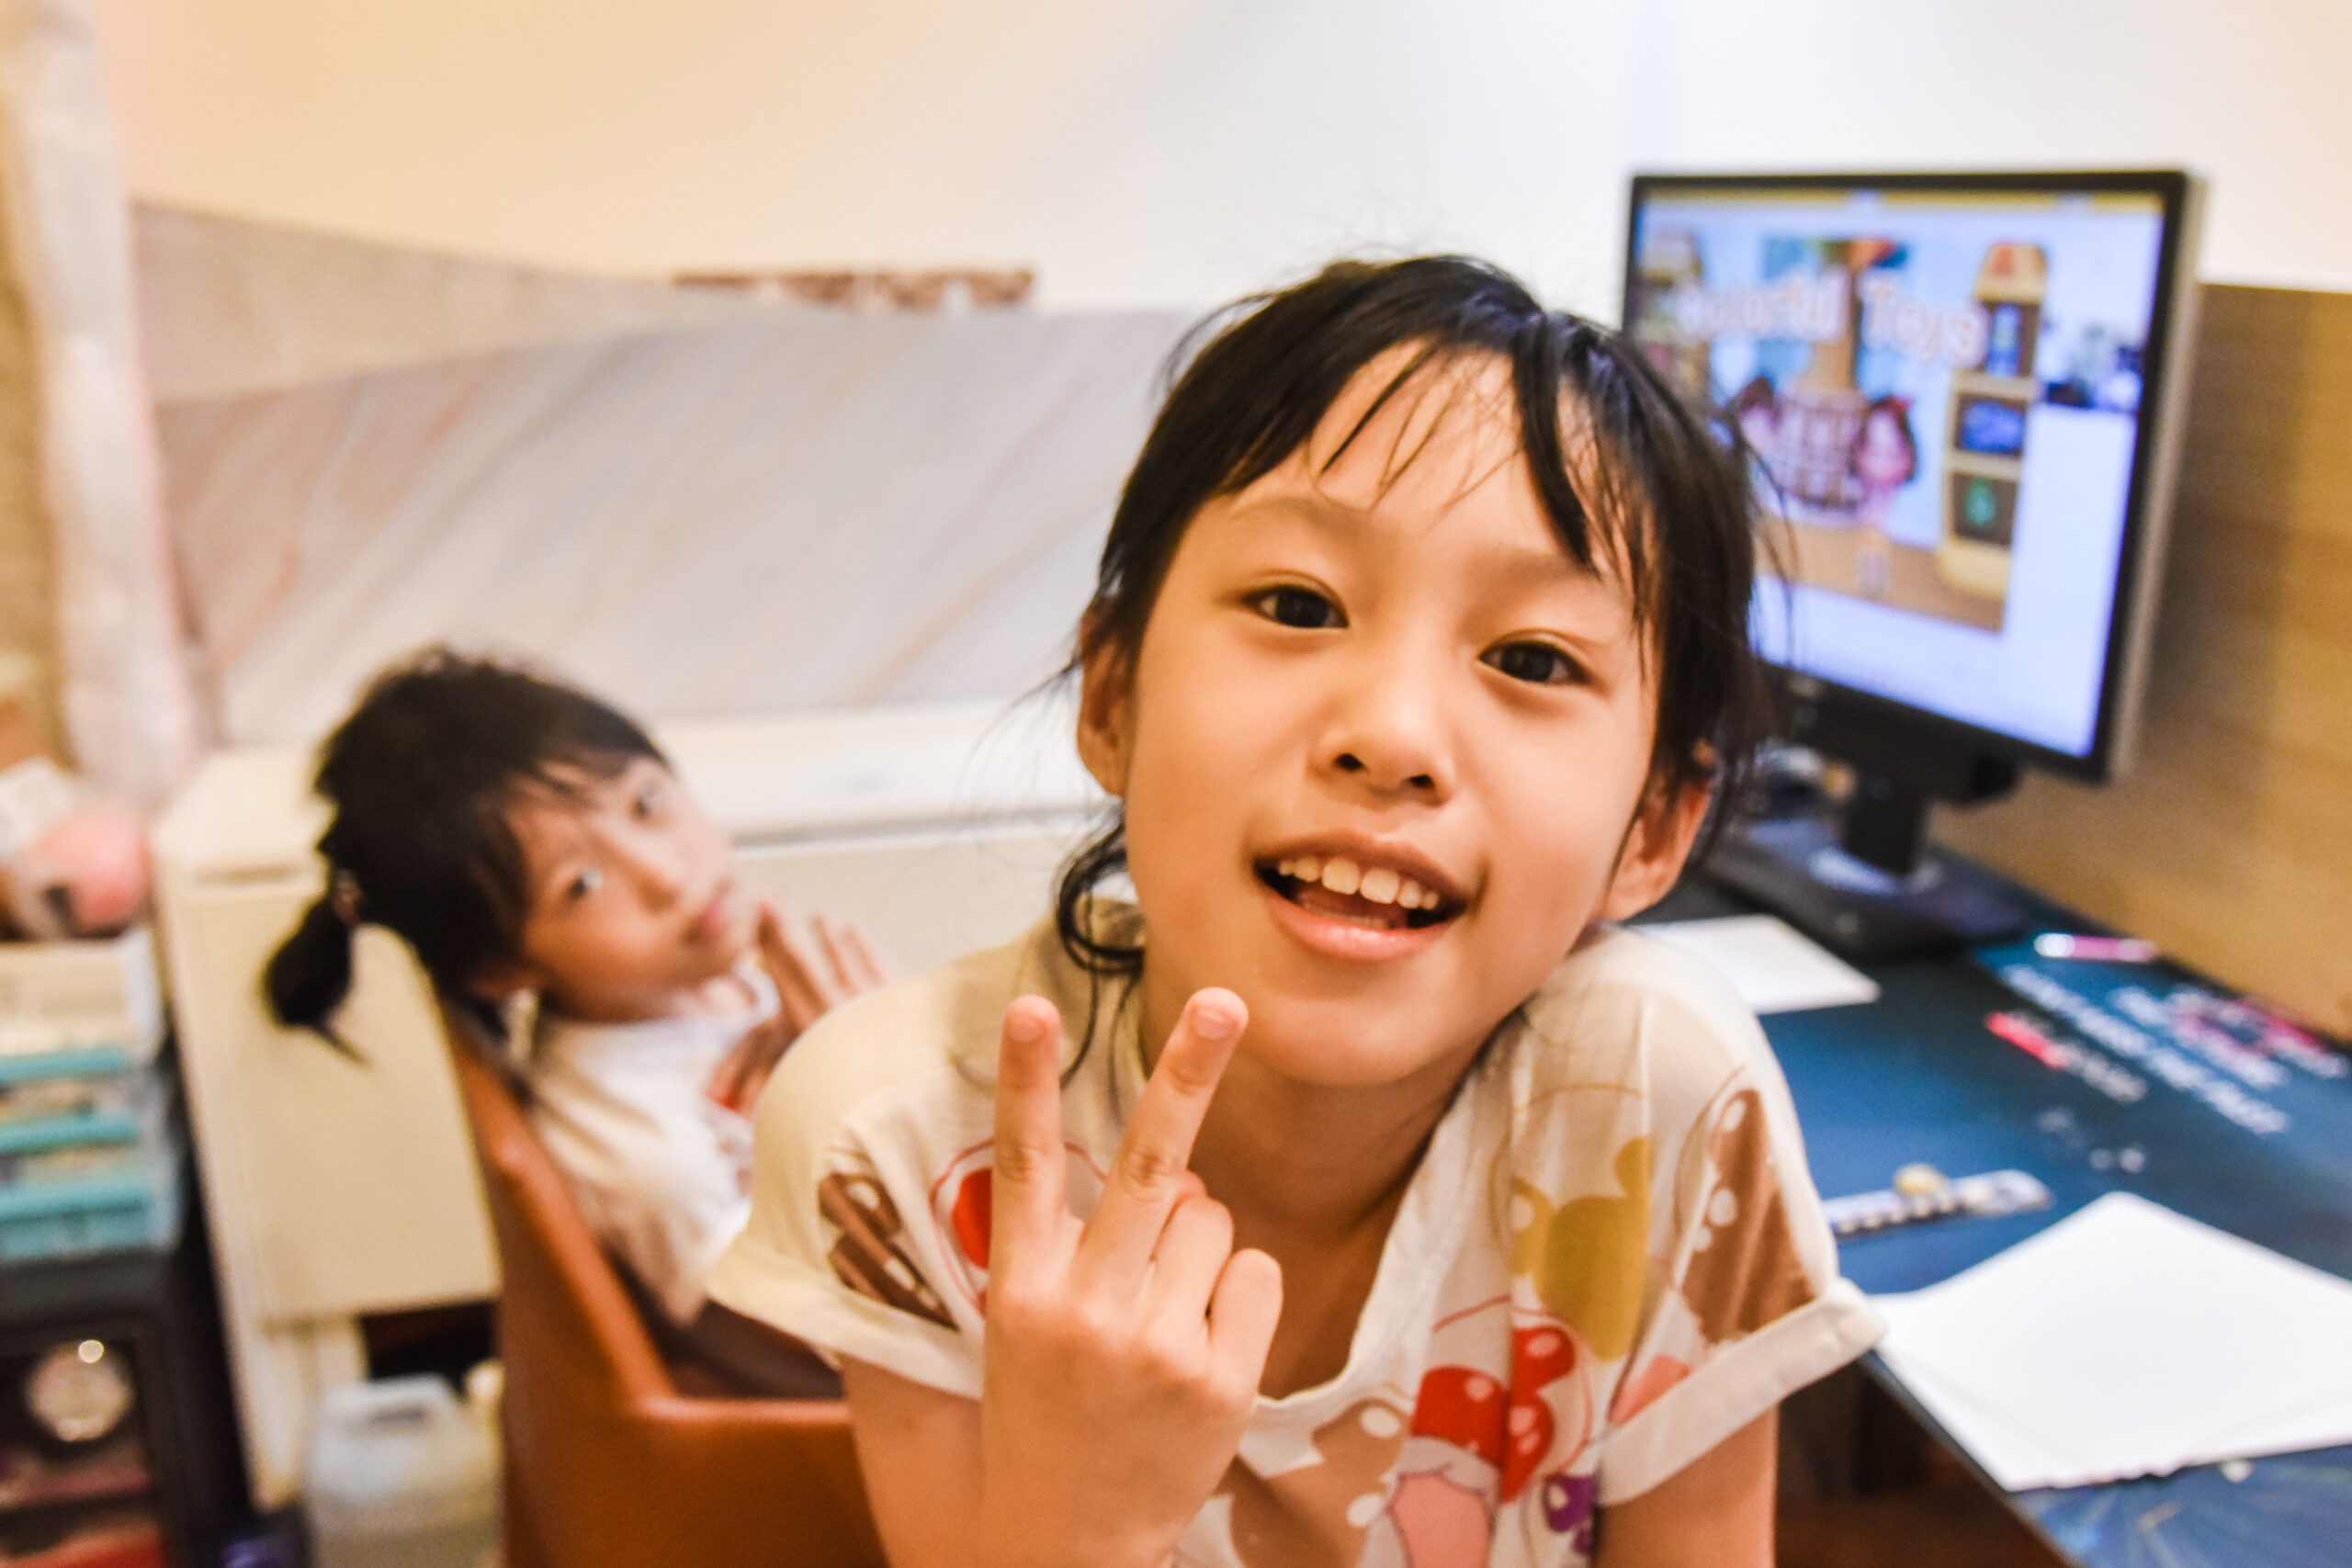 [懶人包] 台北市親子館推薦|0-6歲室內親子館|騎士堡信誼貝兒斯京華城費用時間比較 @ELSA菲常好攝